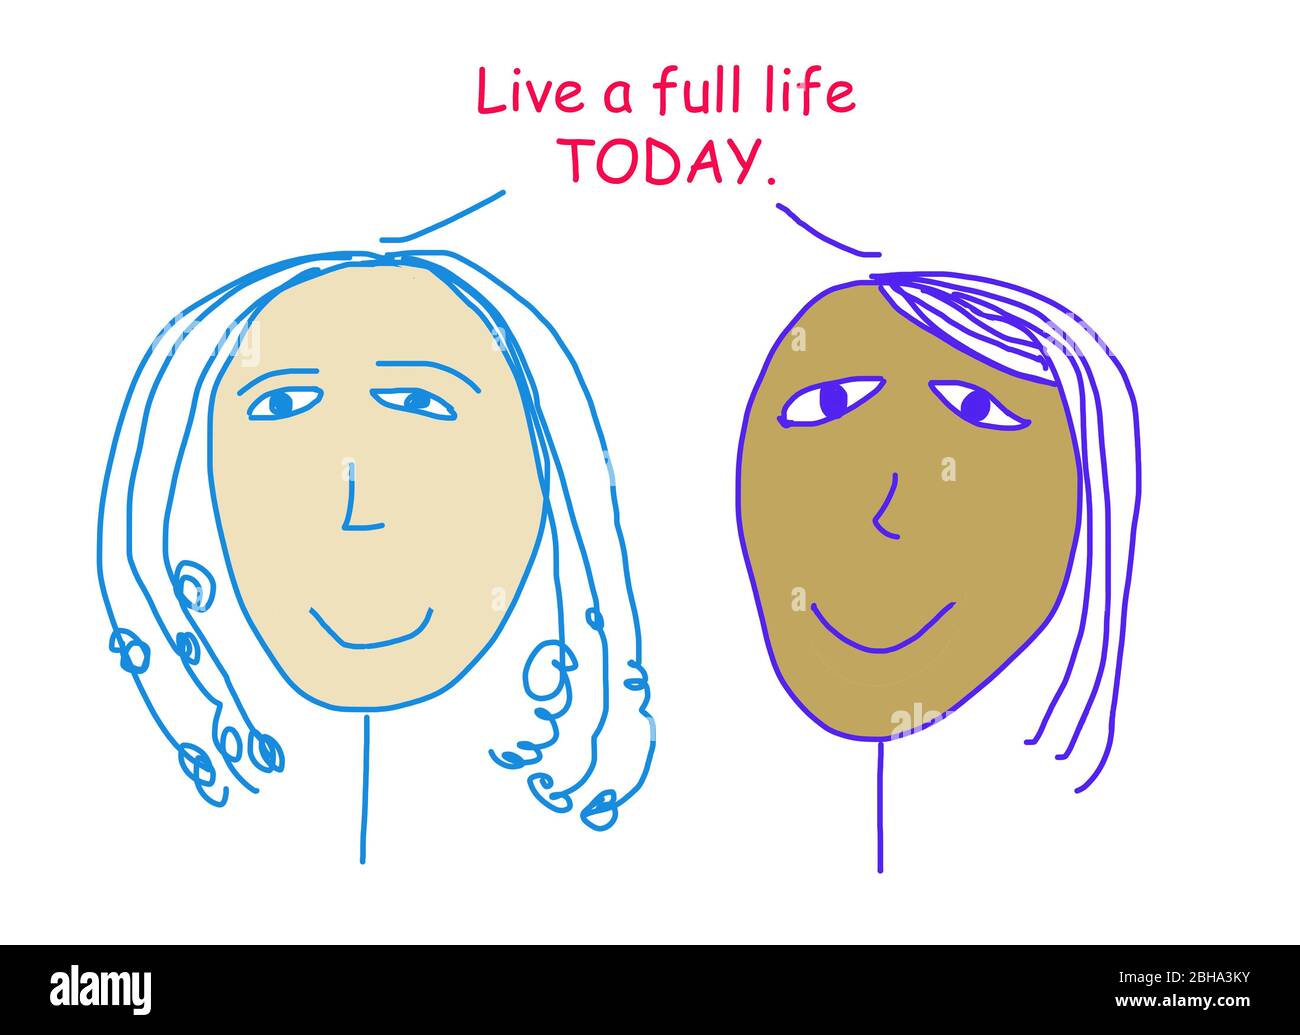 Dessin animé couleur de deux femmes souriantes et ethniquement diverses qui disent la vie une vie entière AUJOURd'HUI. Banque D'Images